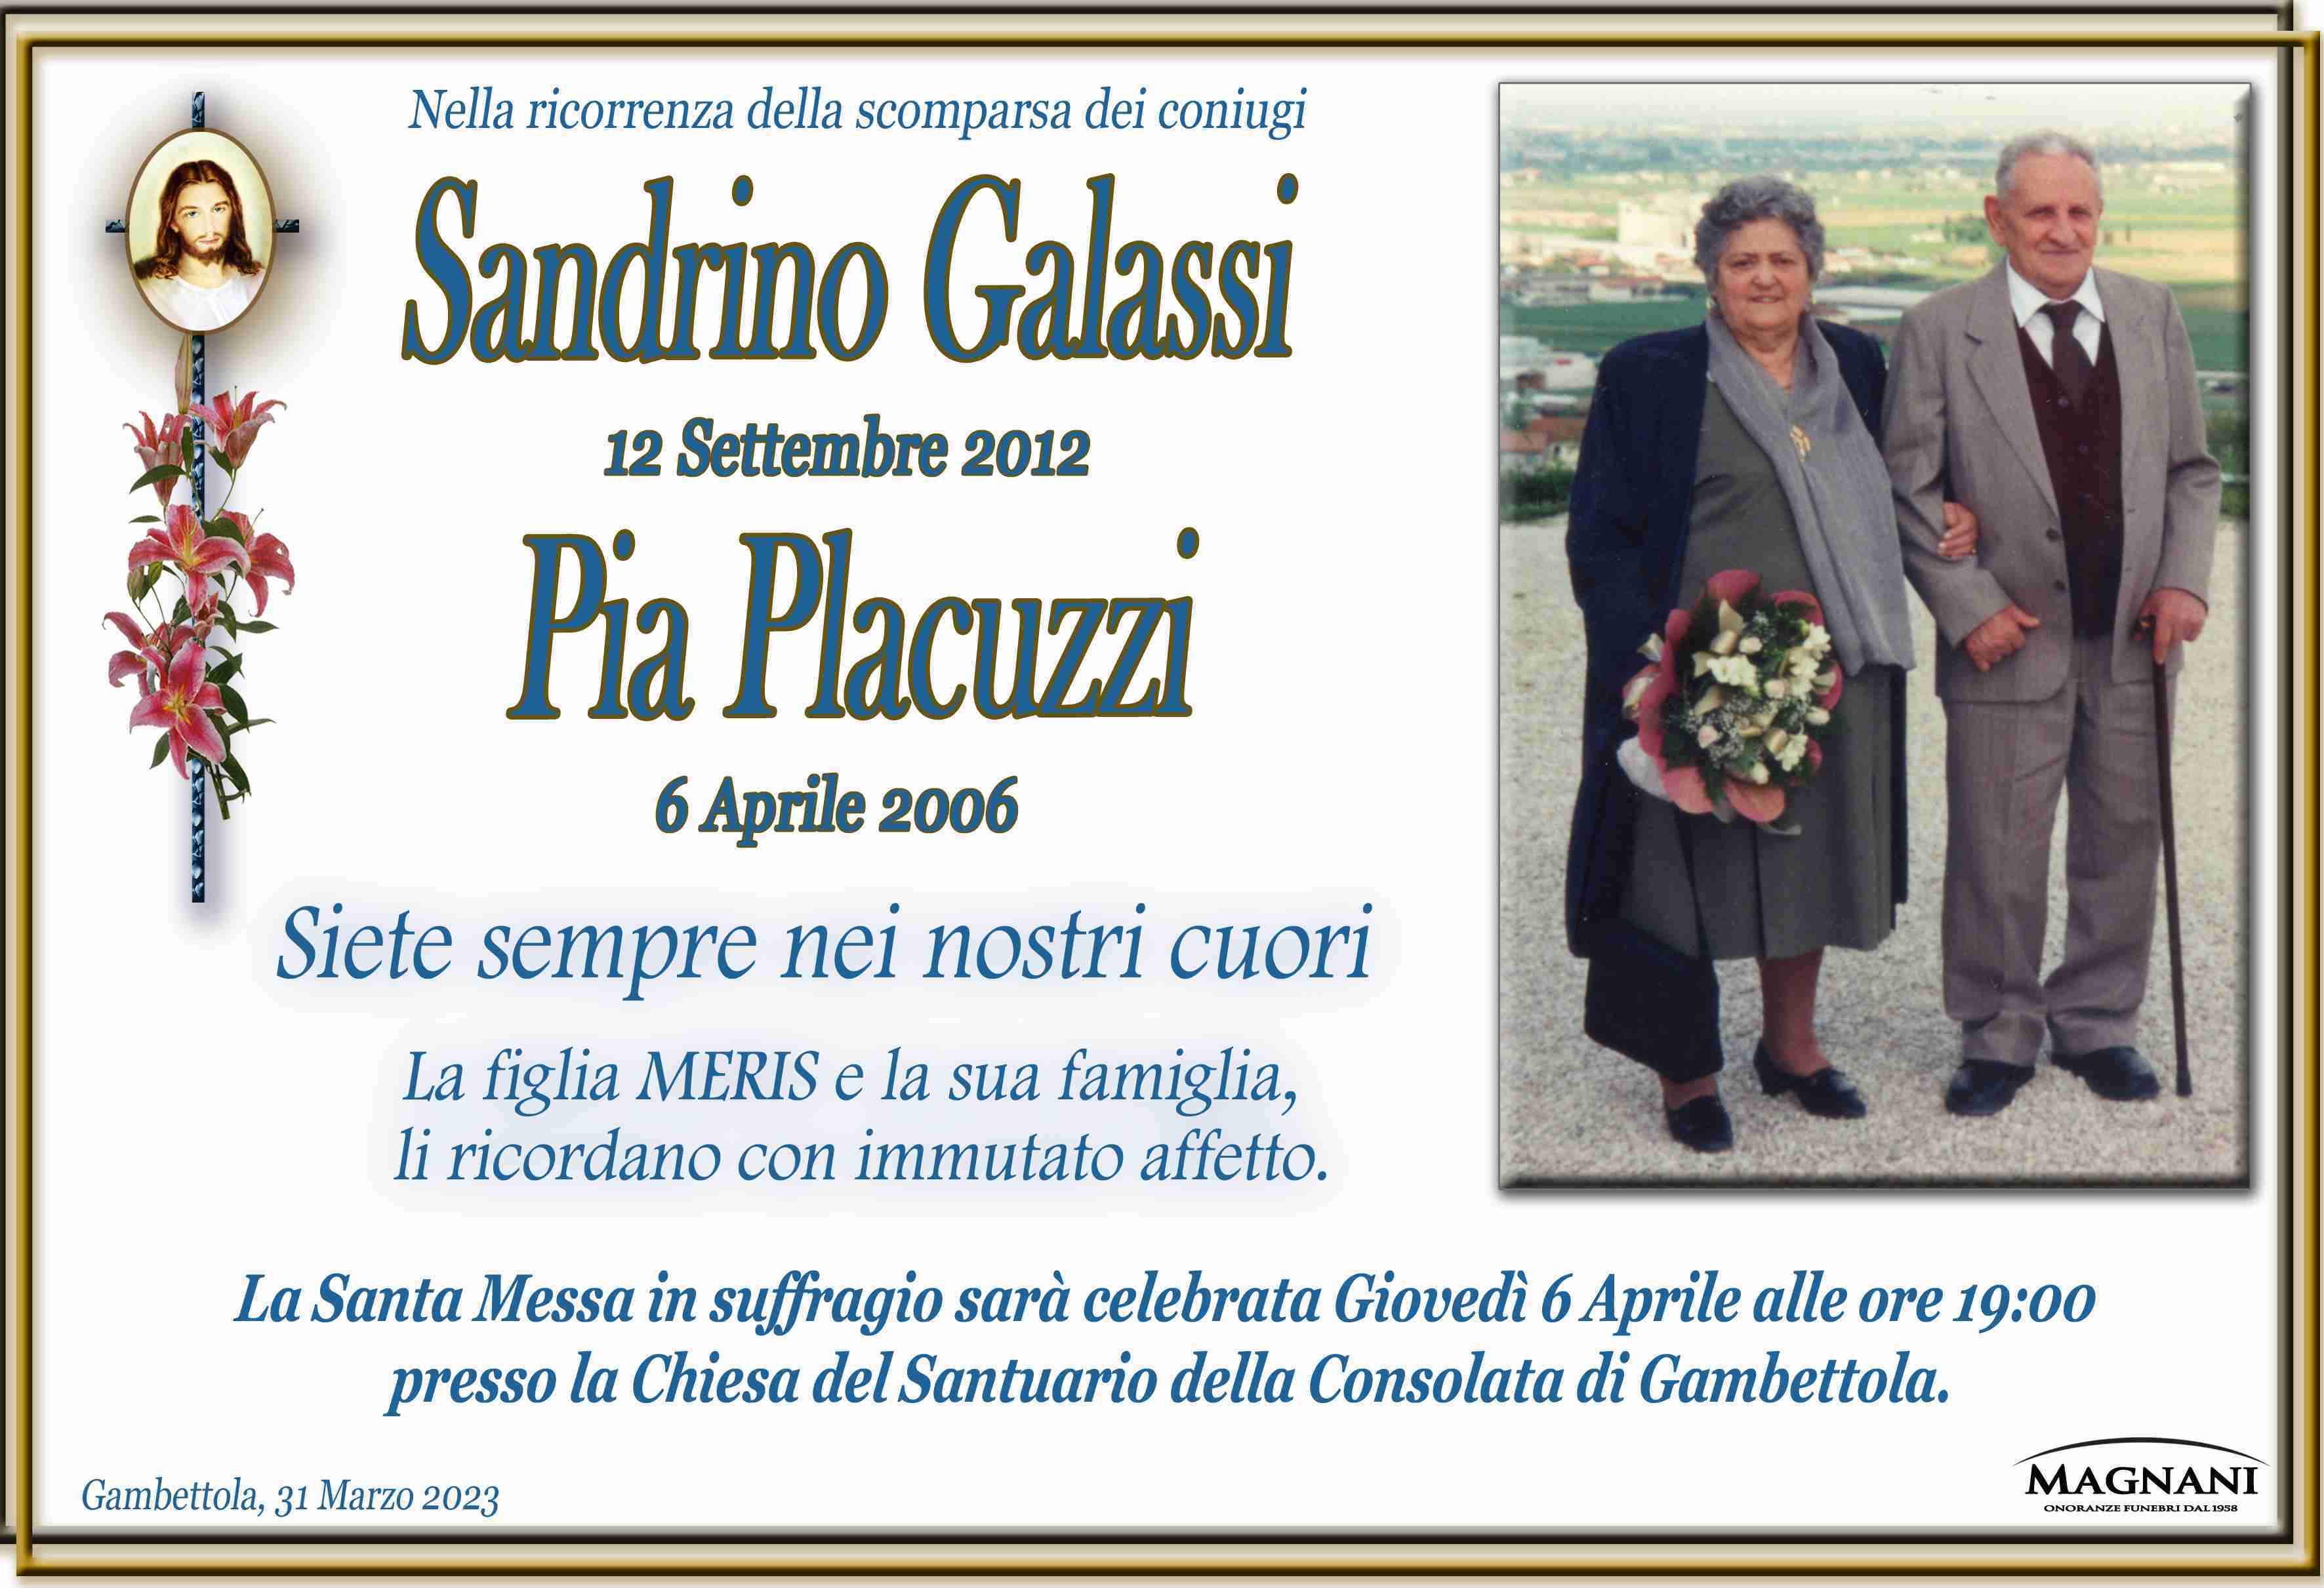 Sandrino Galassi e Pia Placuzzi